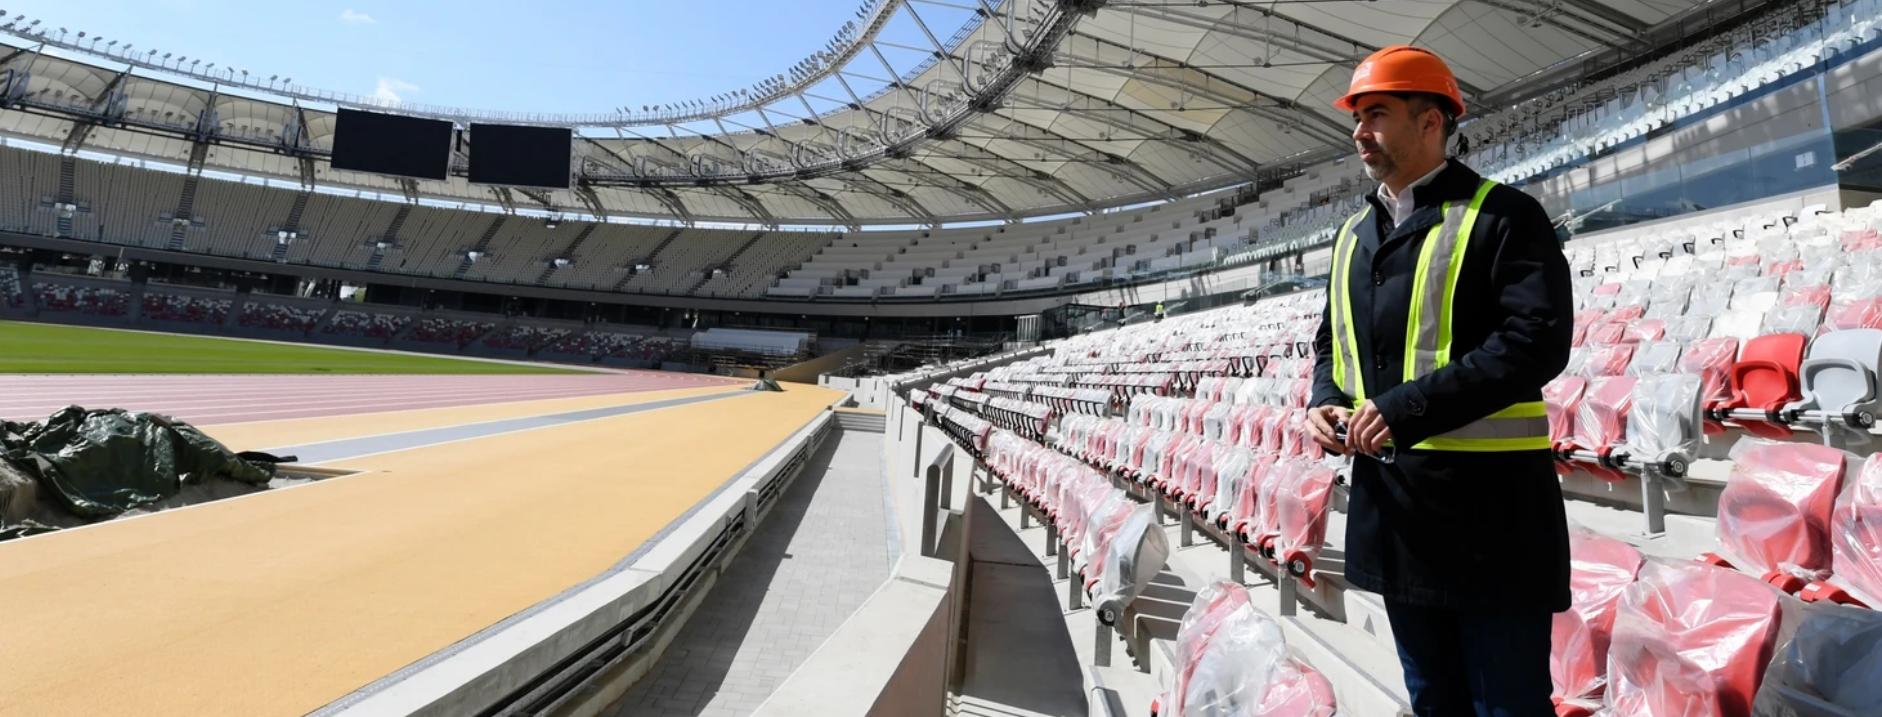 Marton Gyulai, deputy general manager of Budapest 2023, surveys the newly-finished nine-lane track at the National Athletics Centre ©Budapest 2023